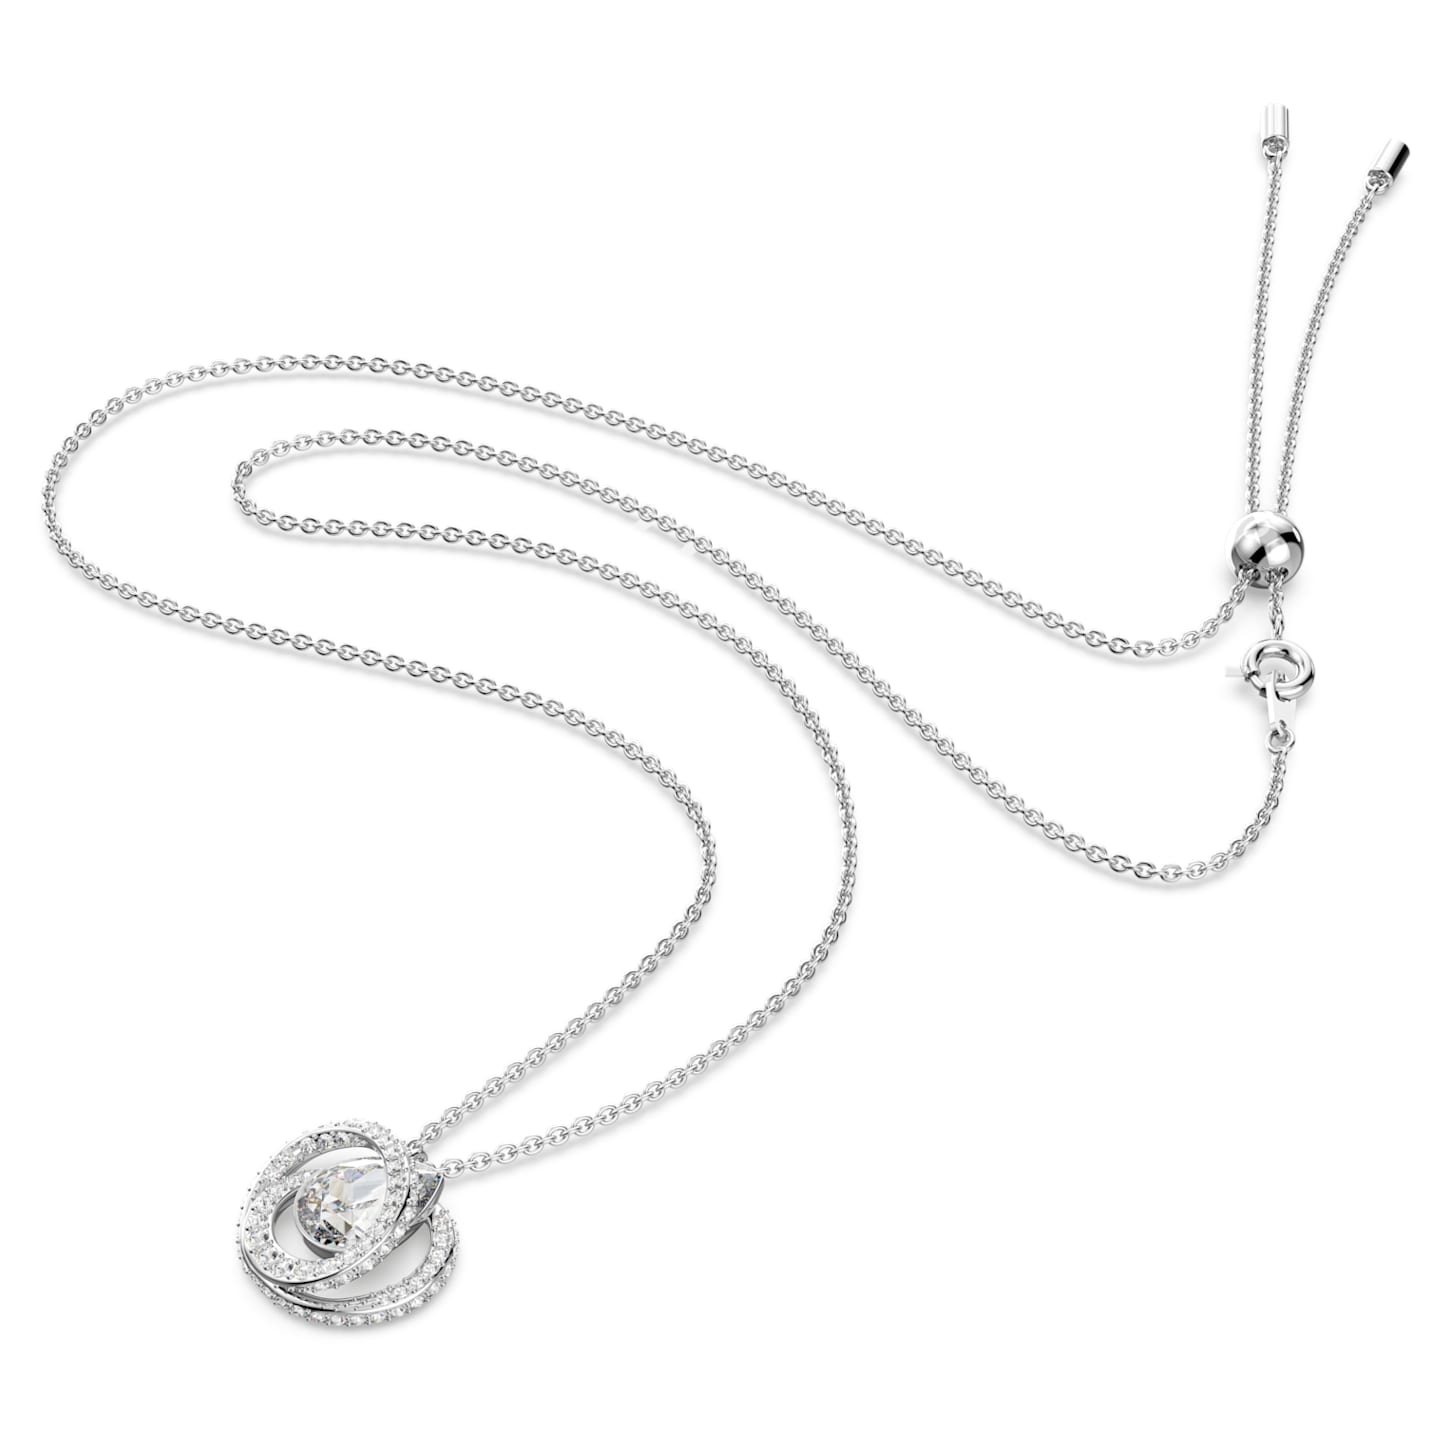 Generation – Weißes Silber – Lange Halskette – Swarovski